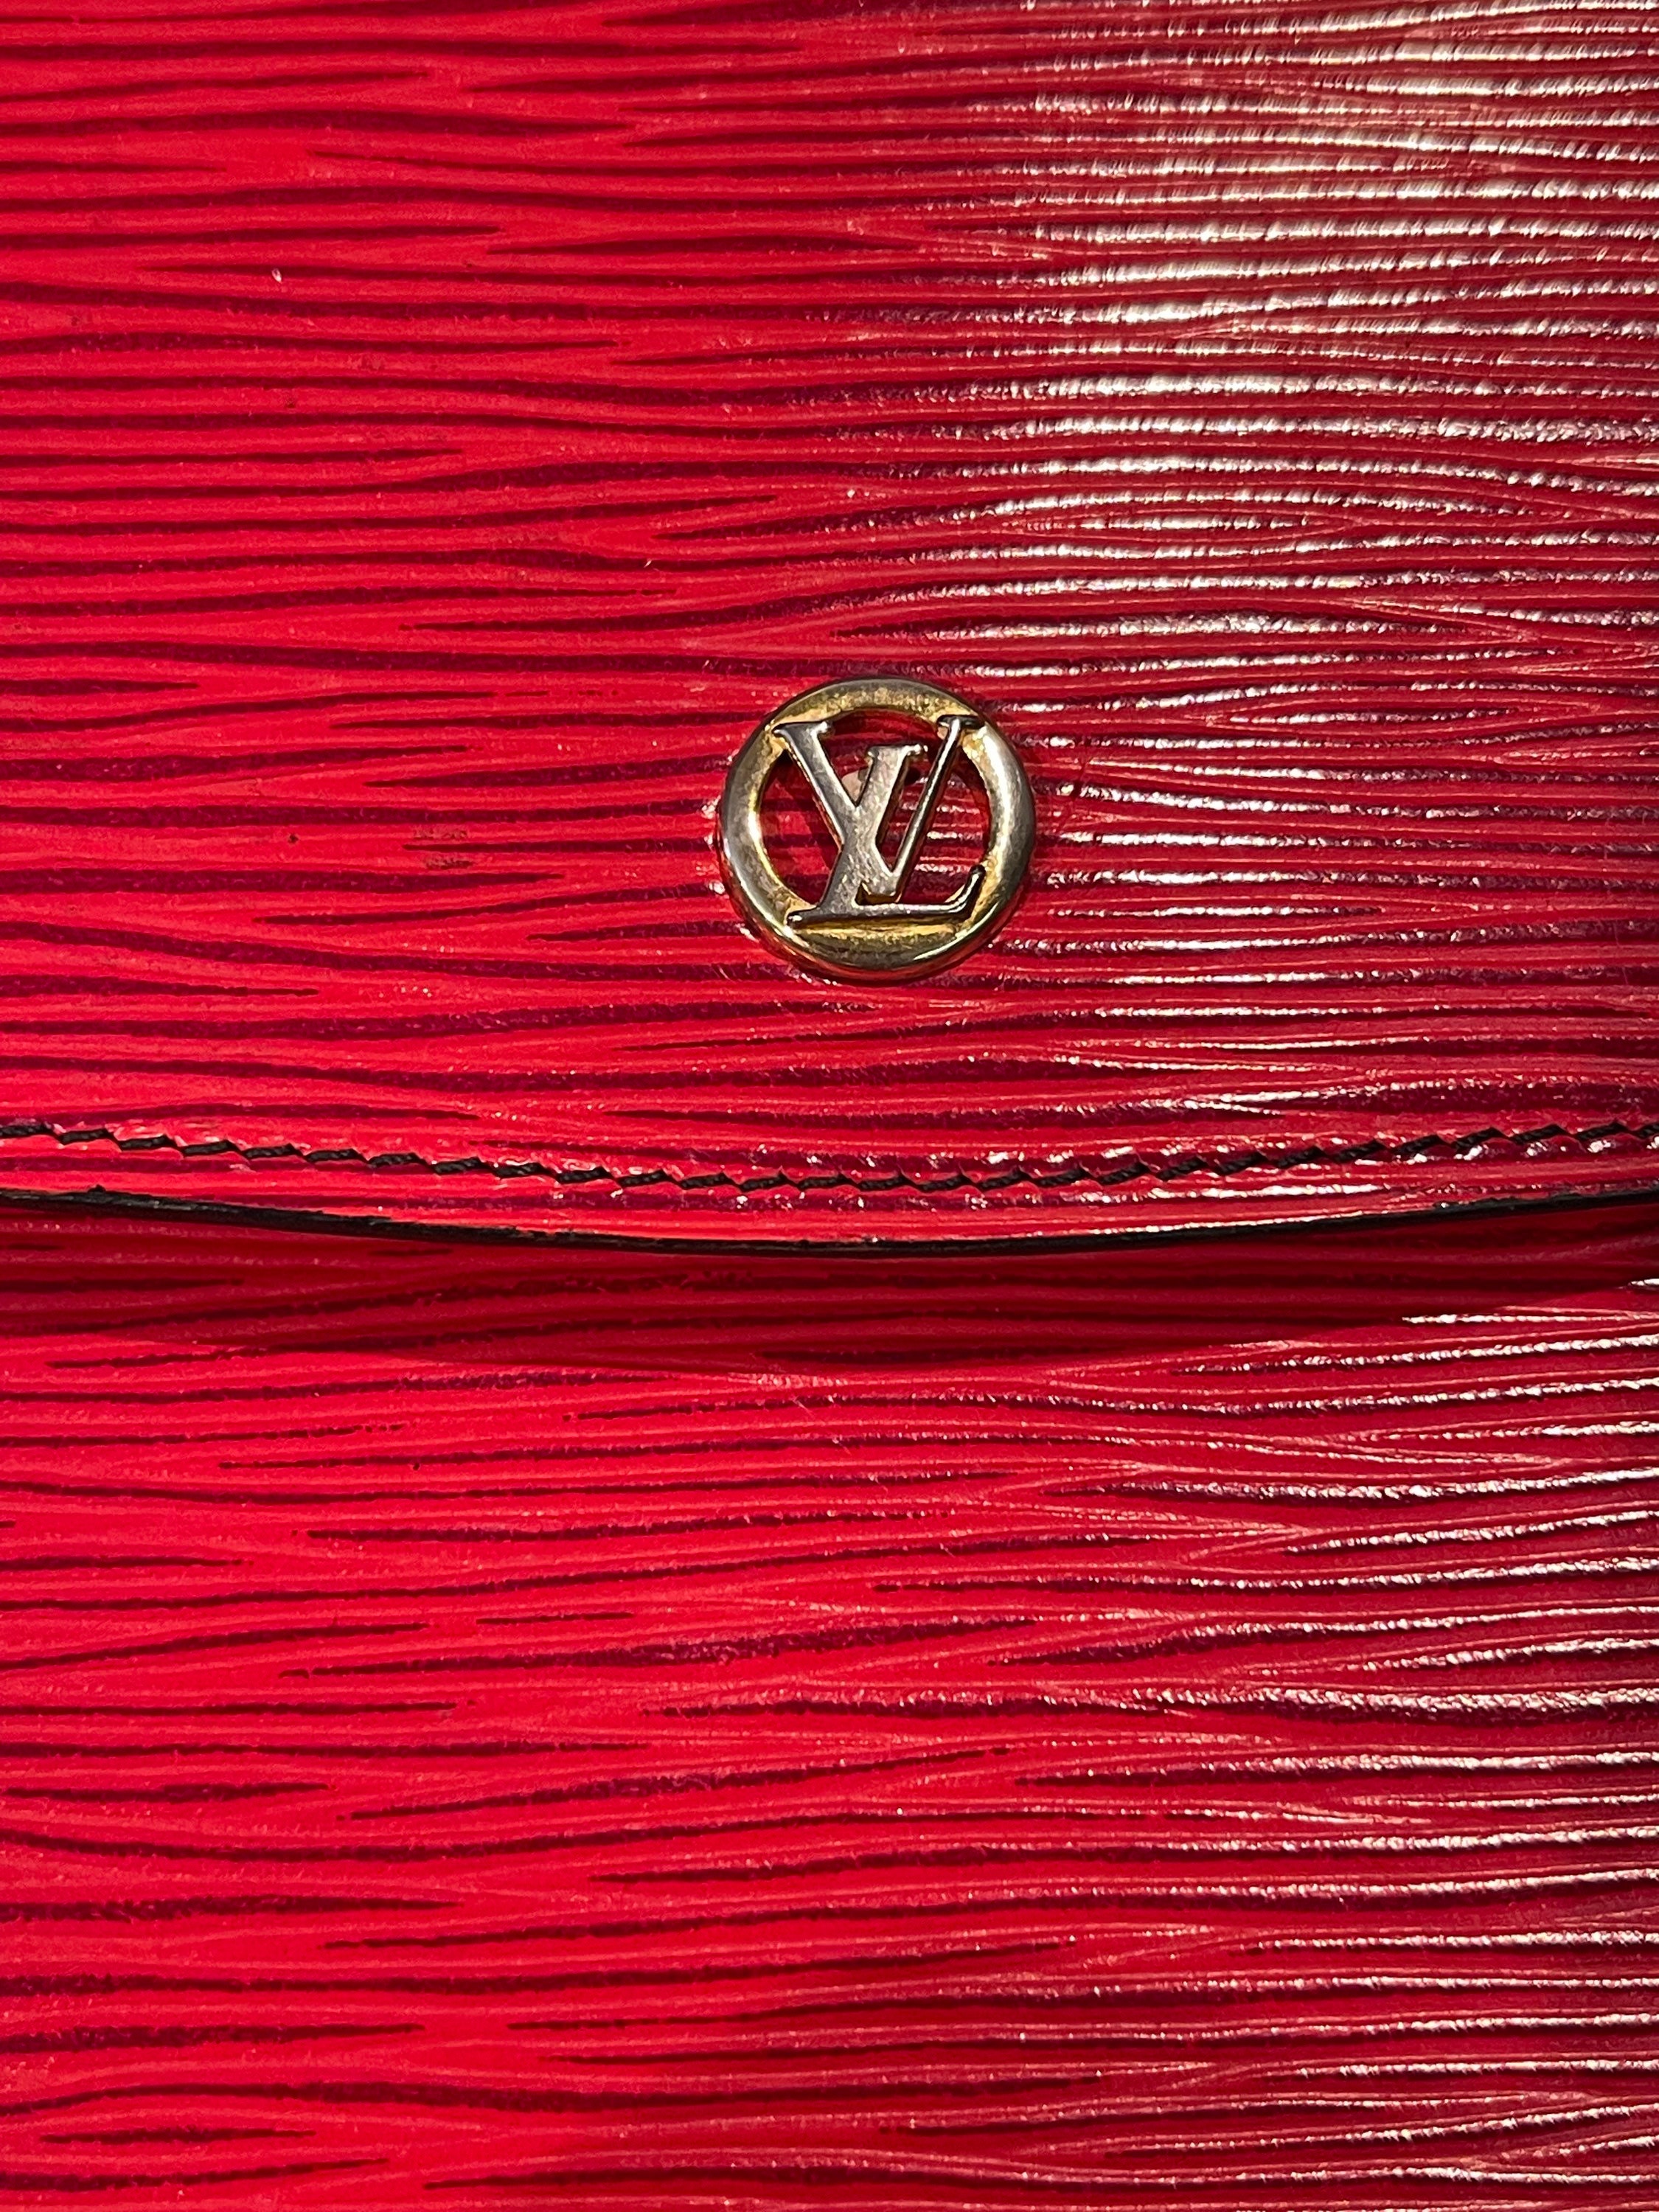 LOUIS VUITTON Vintage Red CLUTCH épi Leather 1980 